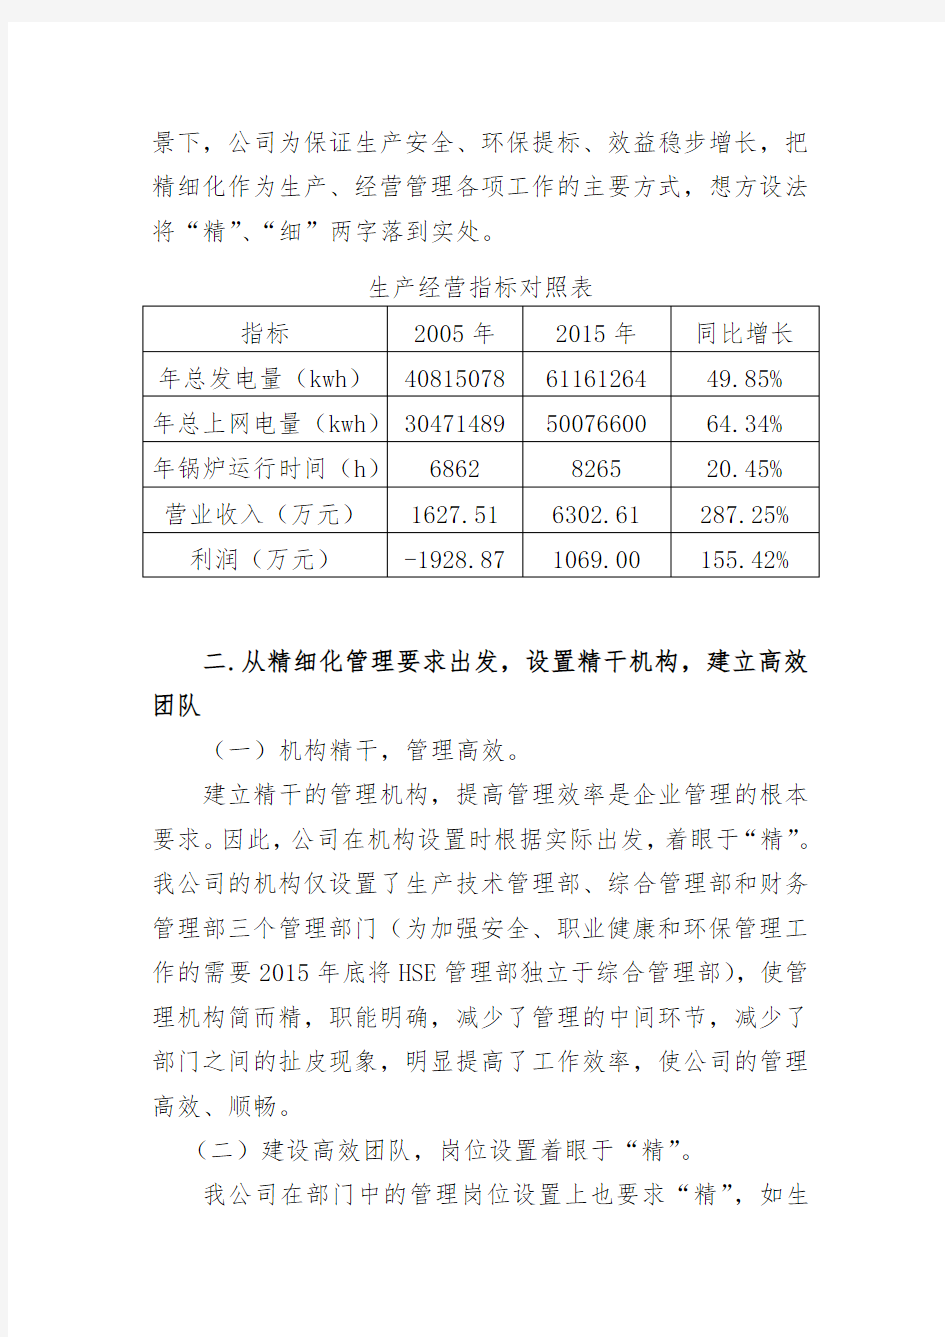 杭州绿能生产经营精细化管理工作发言稿